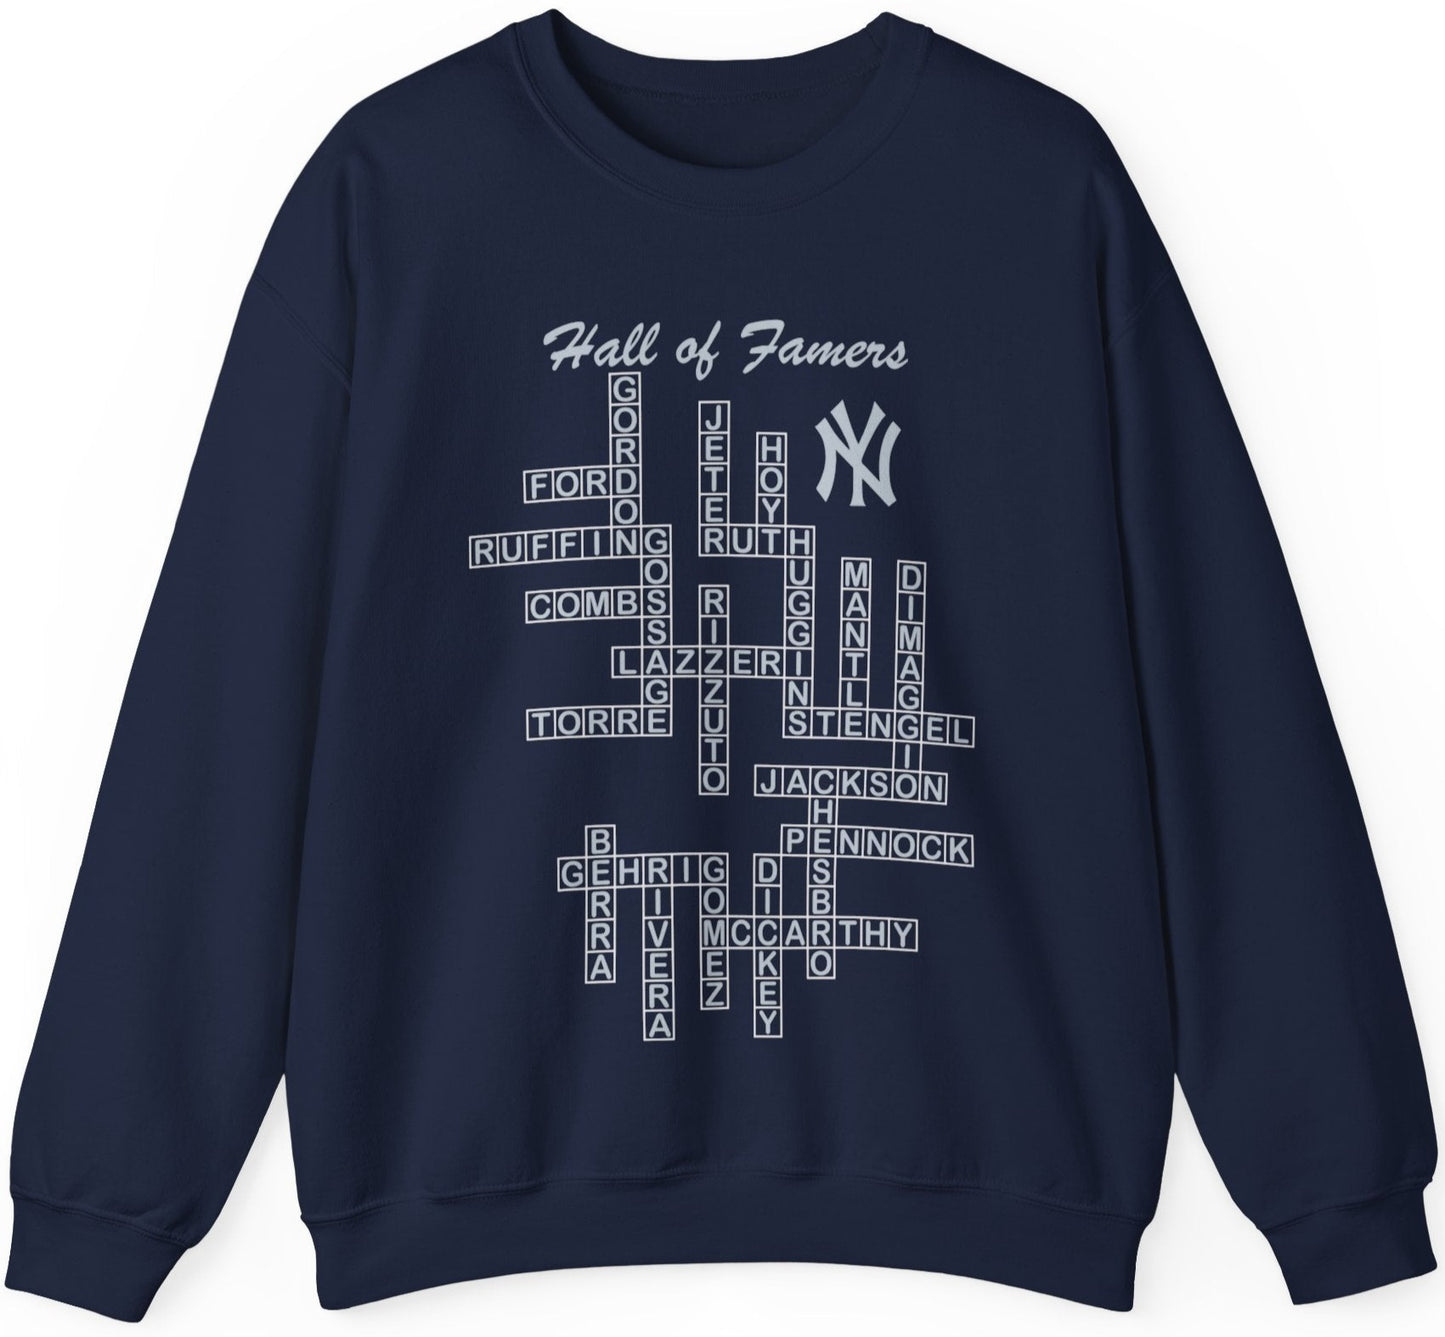 Yankee legends sweatshirt